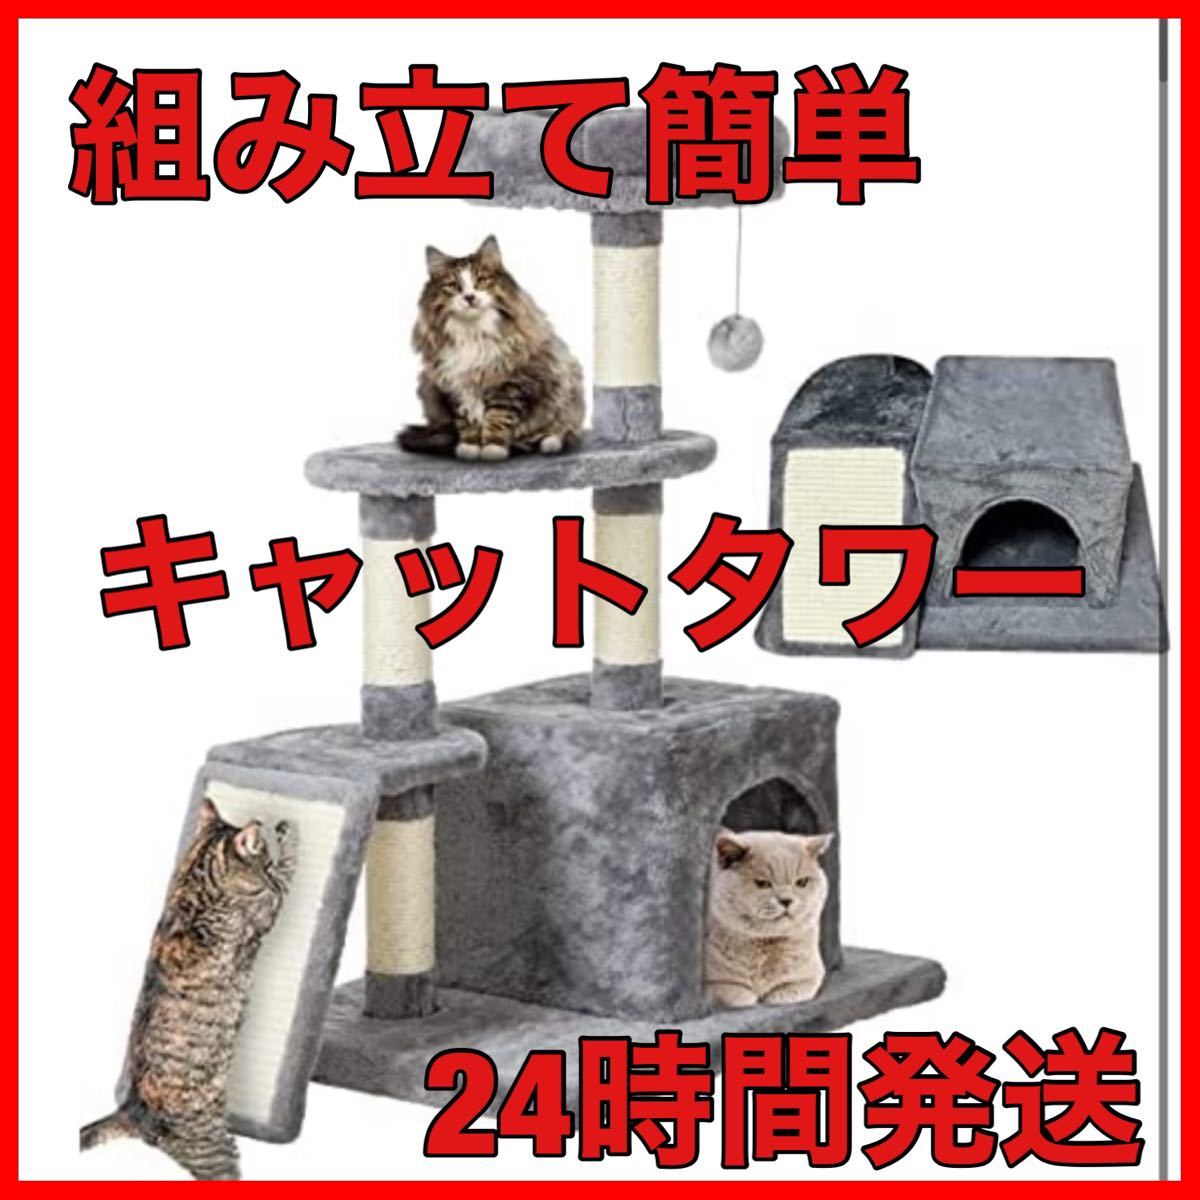 キャットタワー☆猫登りタワー☆据え置き 猫ハウス 三角構造爪とぎ 展望台2台☆